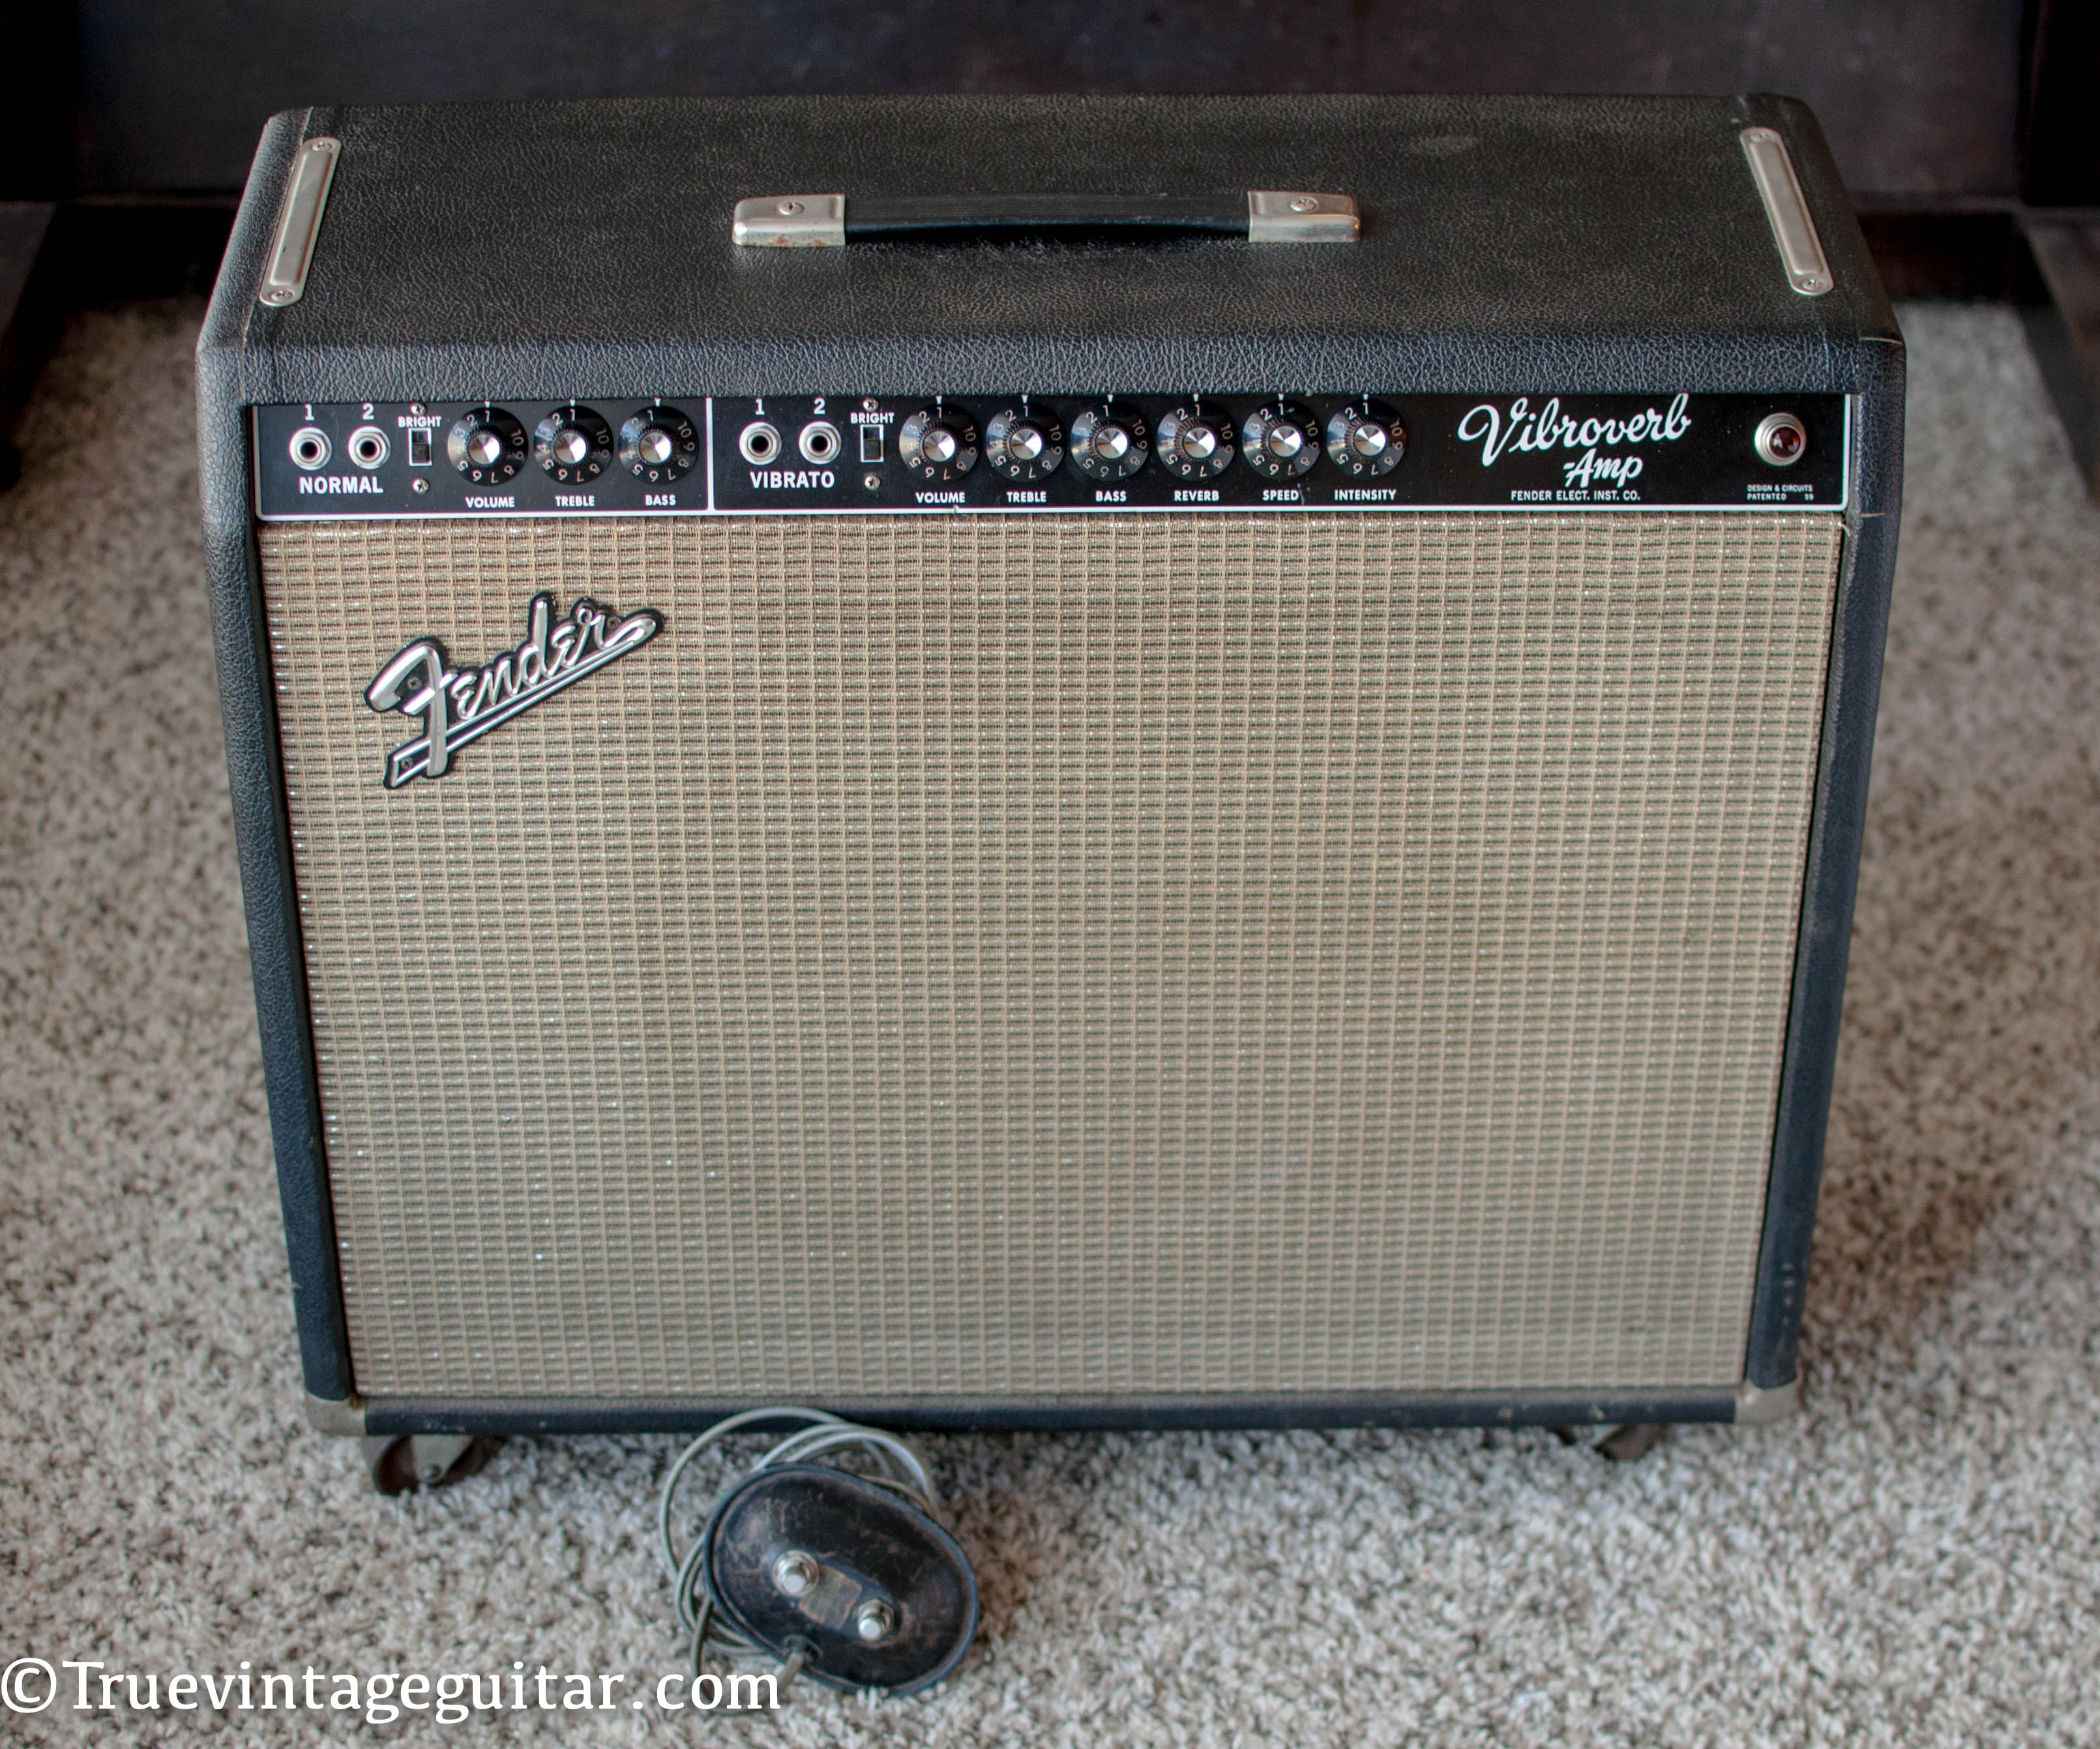 Vintage 1964 Fender Vibroverb amp guitar amplifier